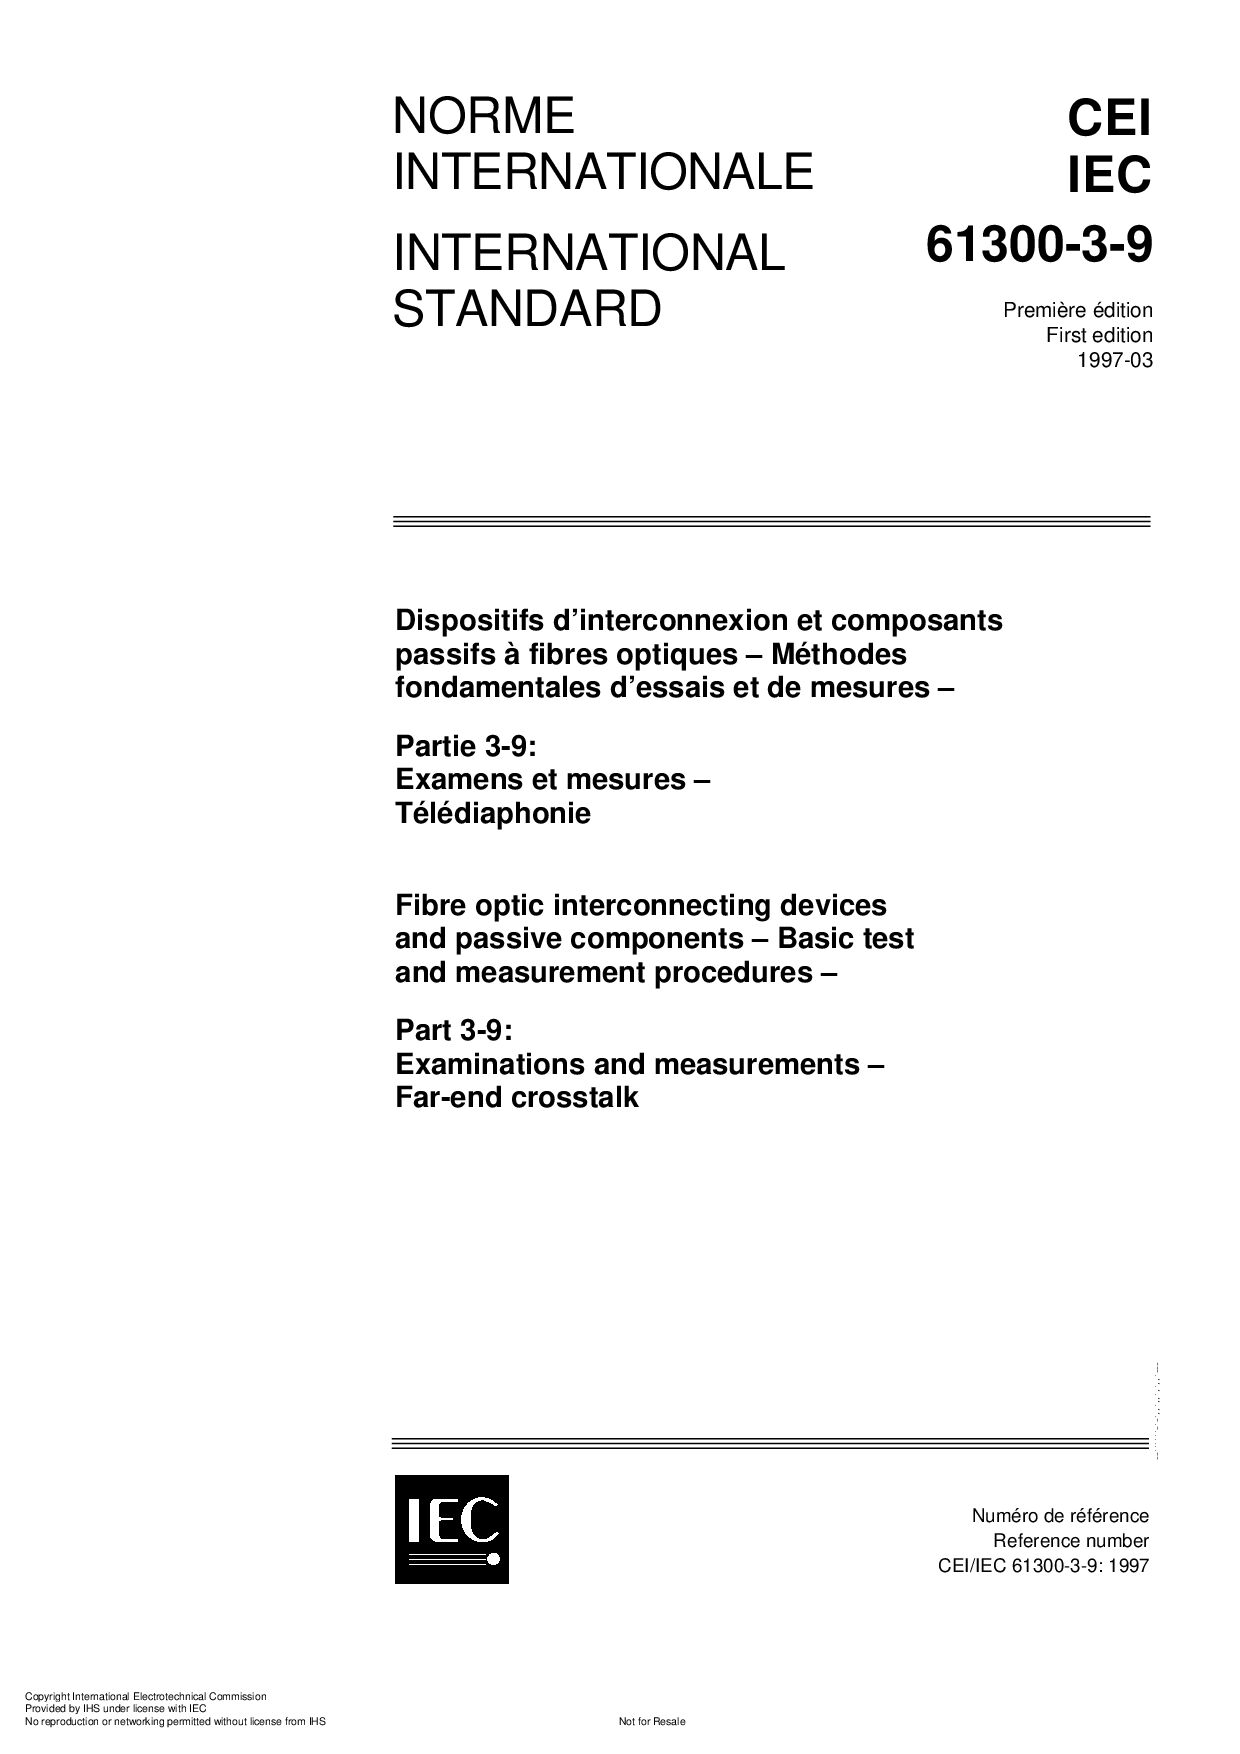 IEC 61300-3-9:1997